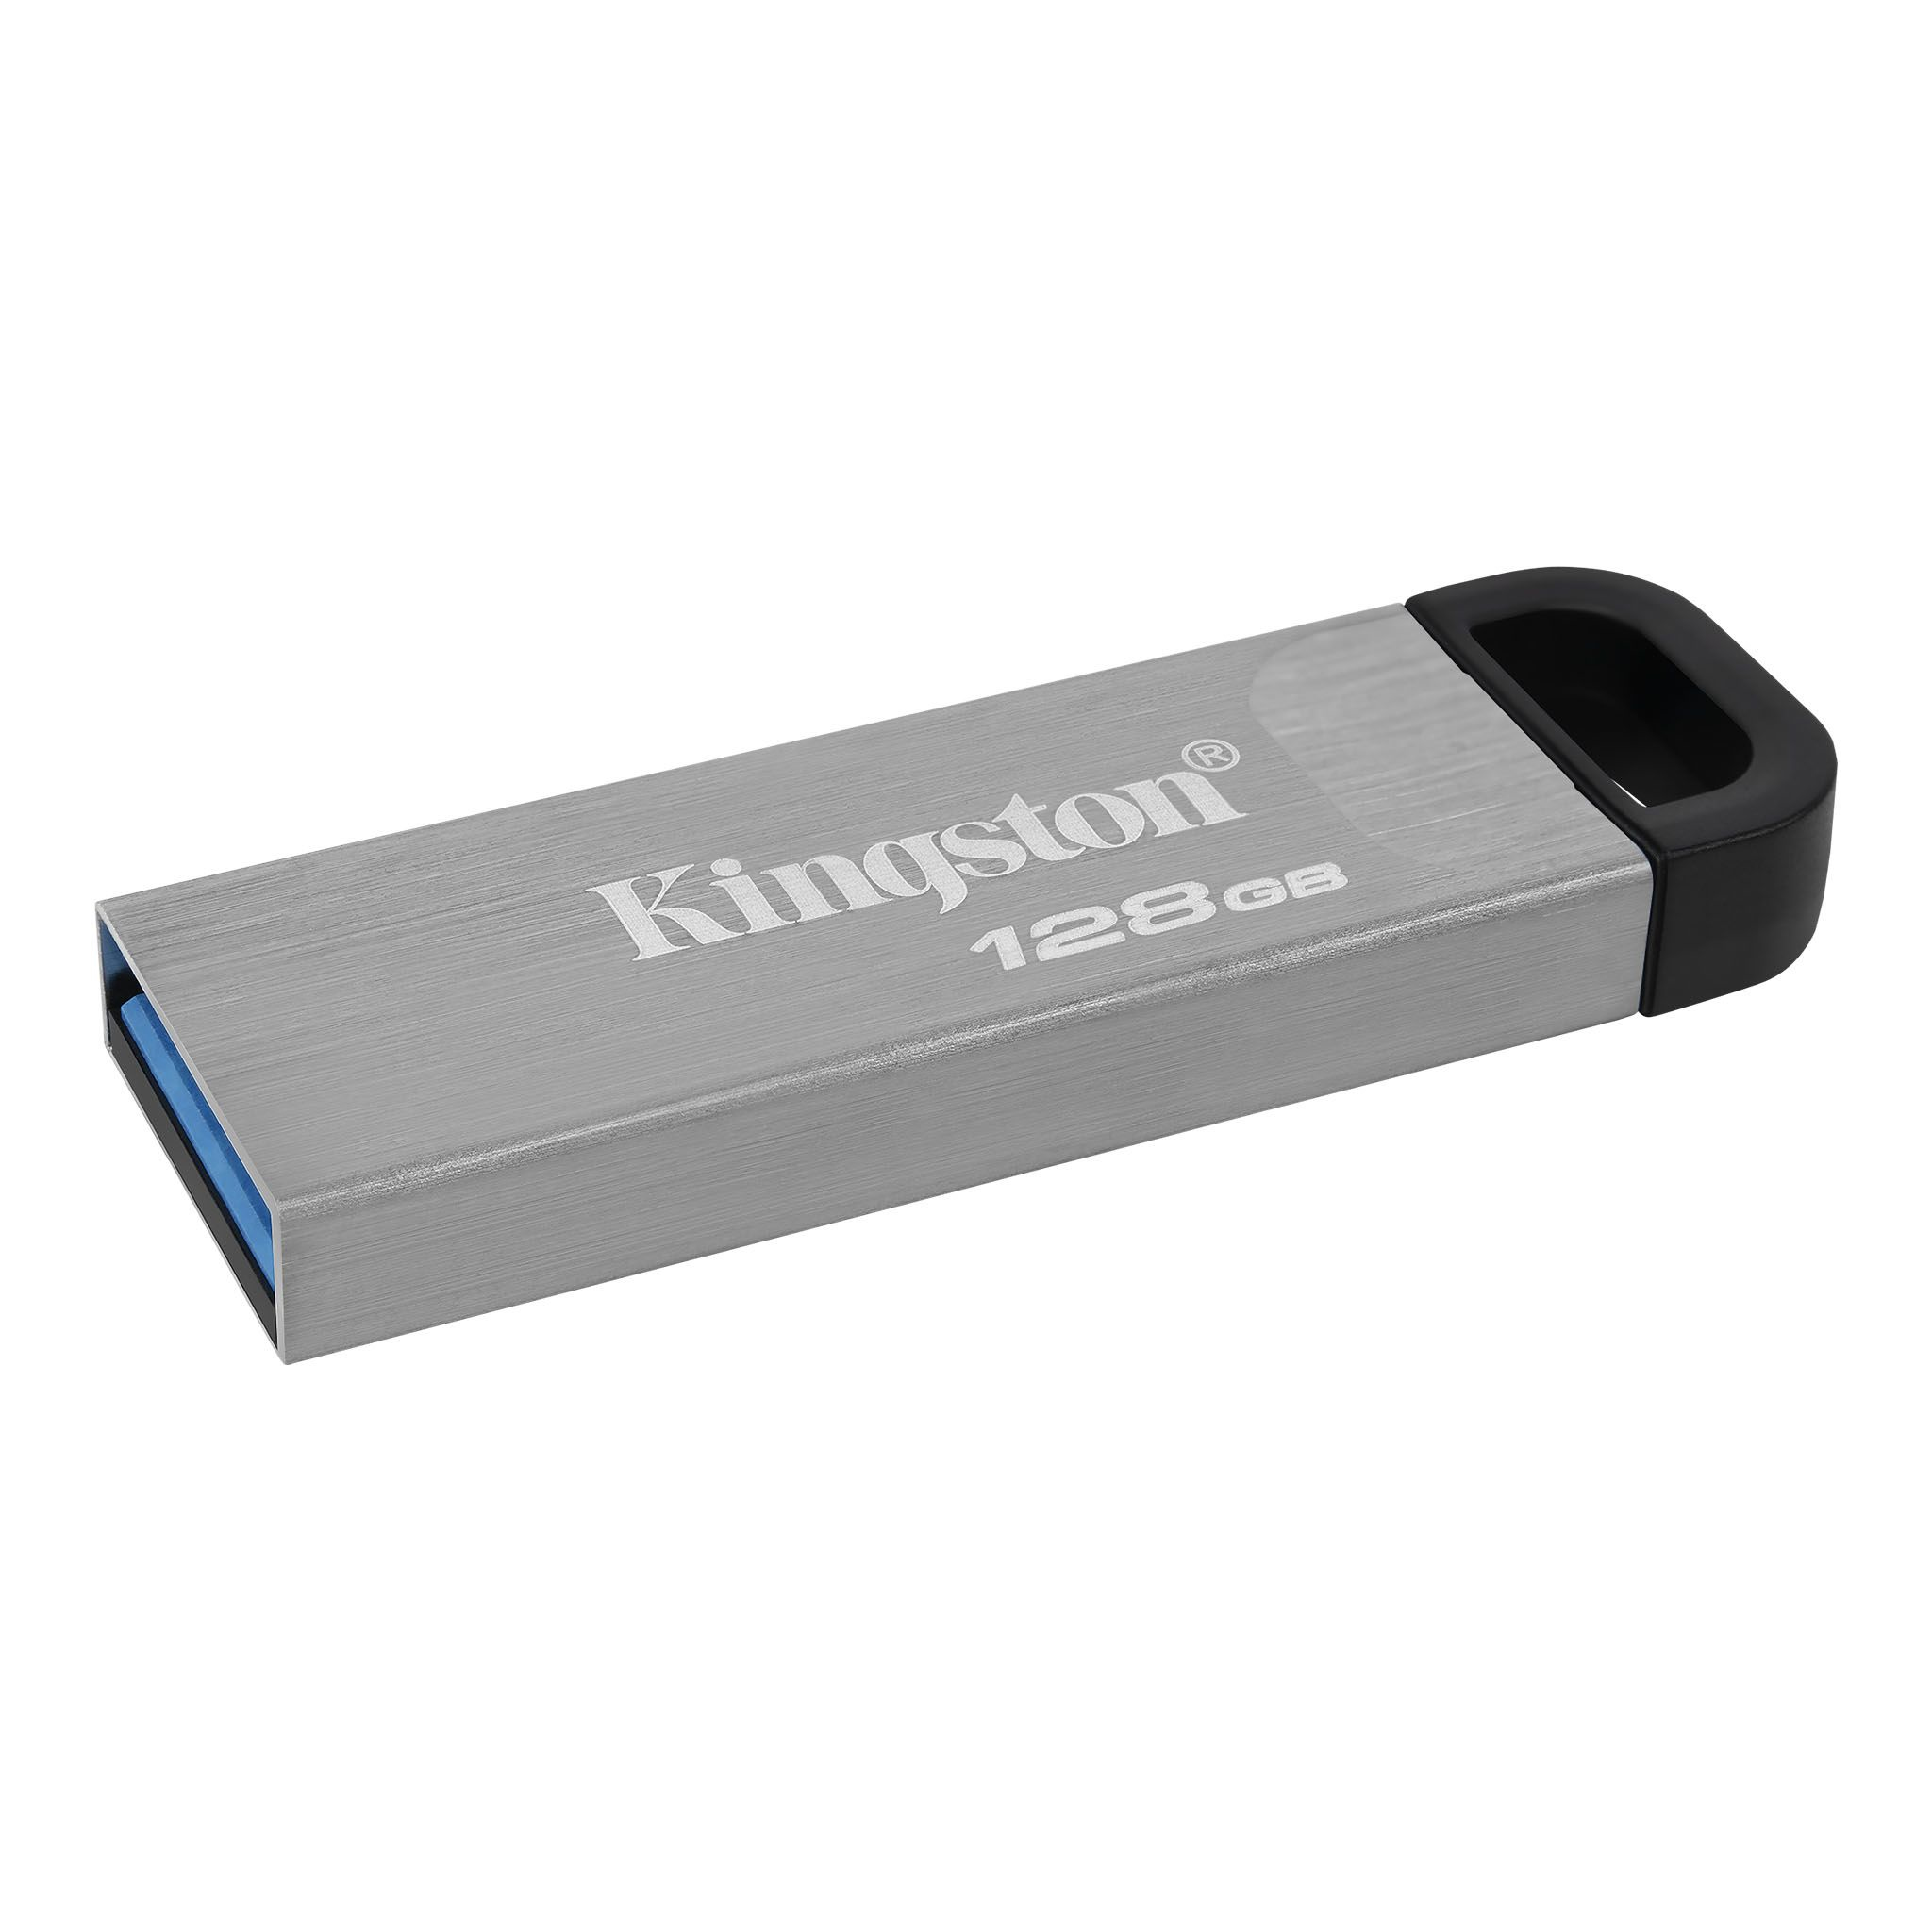 Clé USB DataTraveler Kyson 128 Go Kingston